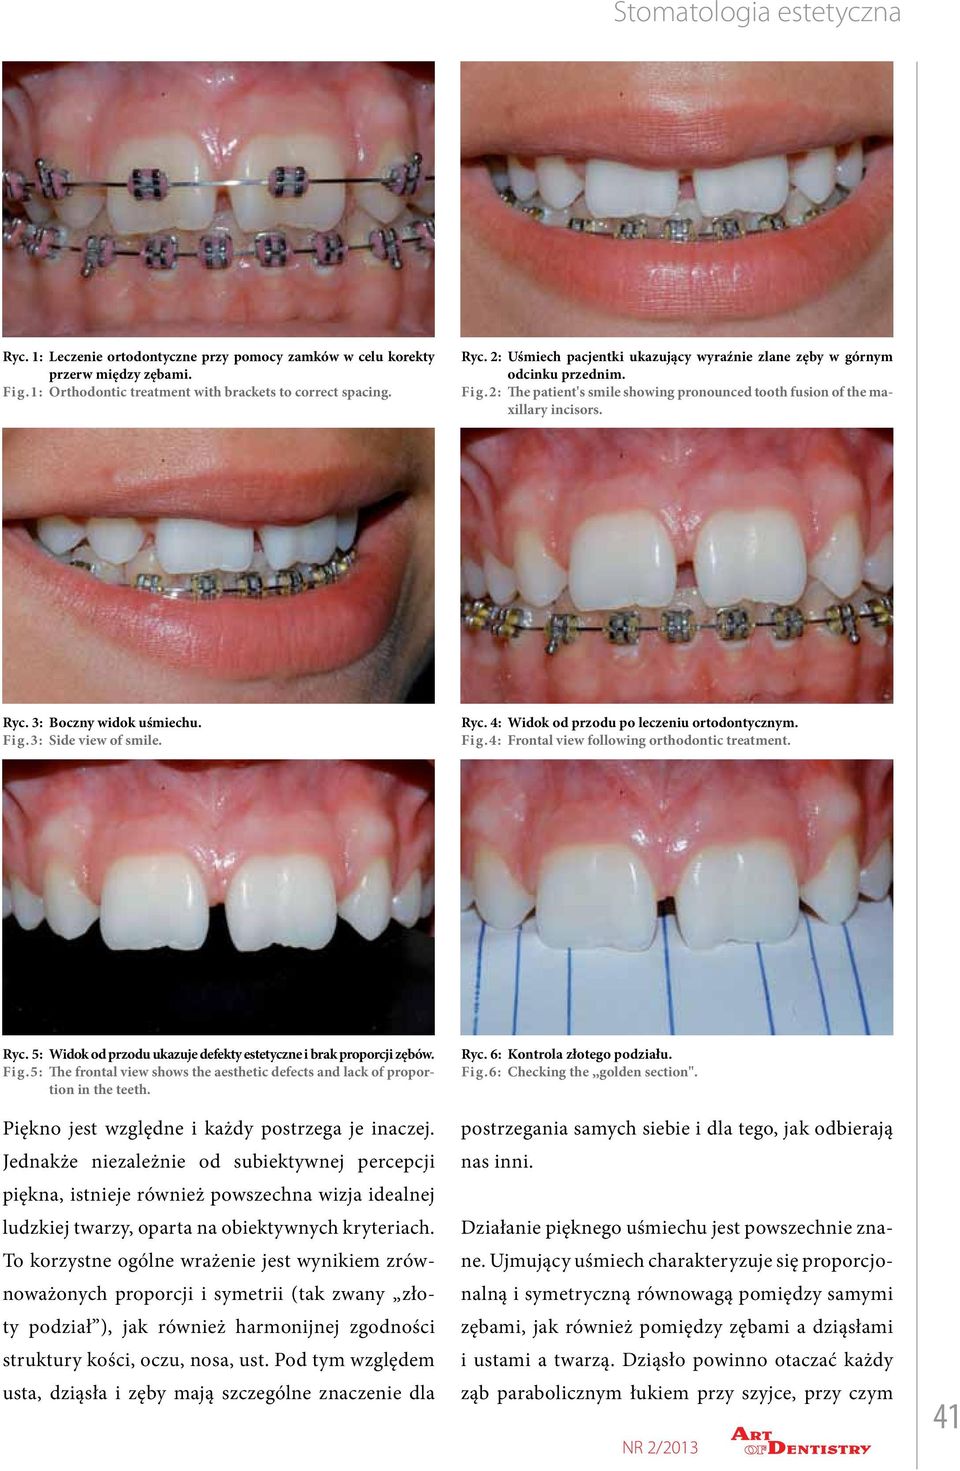 3: Side view of smile. Ryc. 4: Widok od przodu po leczeniu ortodontycznym. Fig.4: Frontal view following orthodontic treatment. Ryc. 5: Widok od przodu ukazuje defekty estetyczne i brak proporcji zębów.